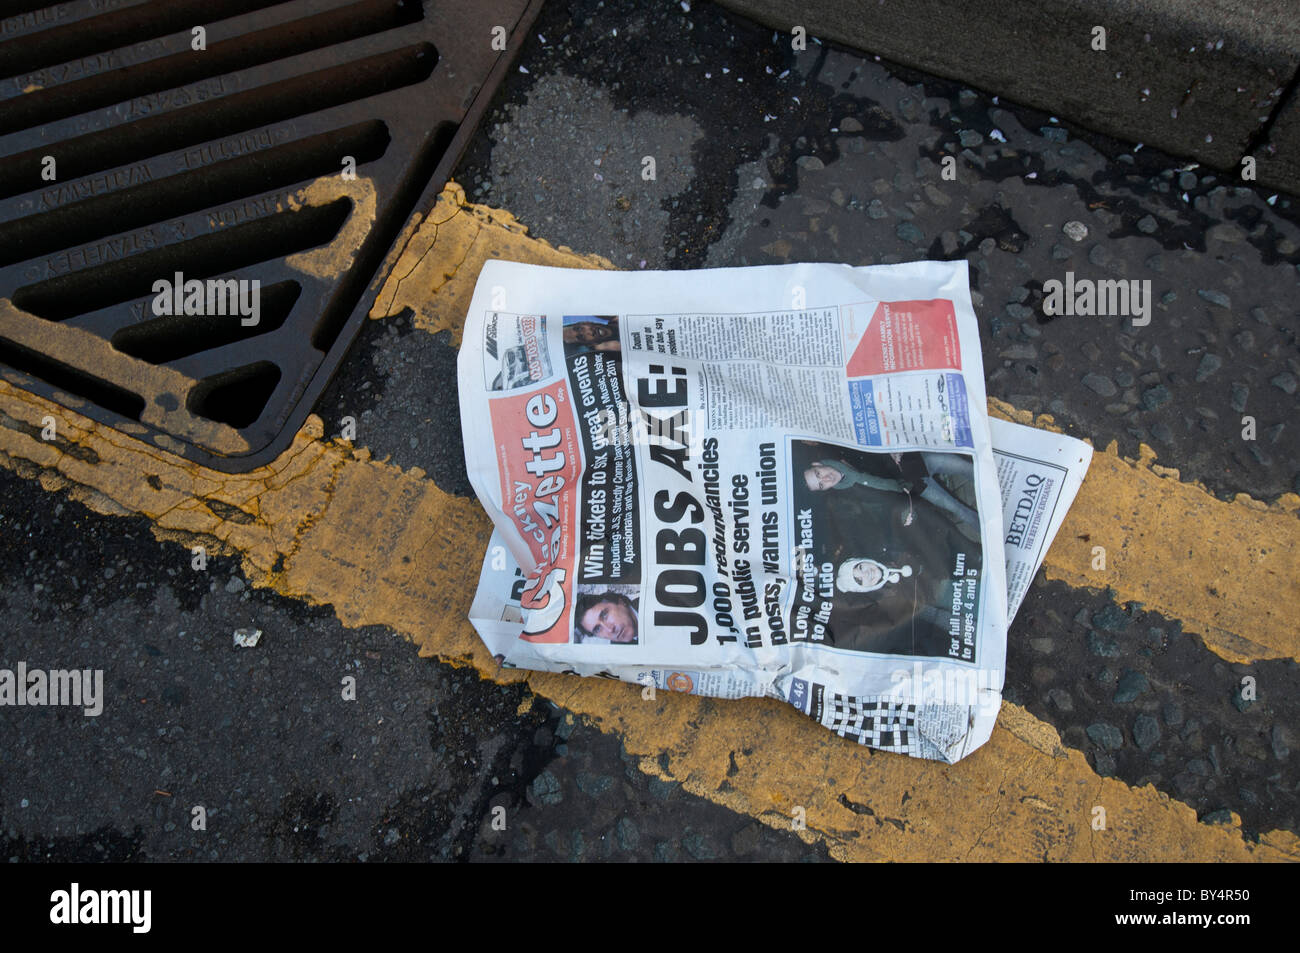 Hackney crisi economica. Giornale con front page headline ' Lavori ax' nella gronda Foto Stock